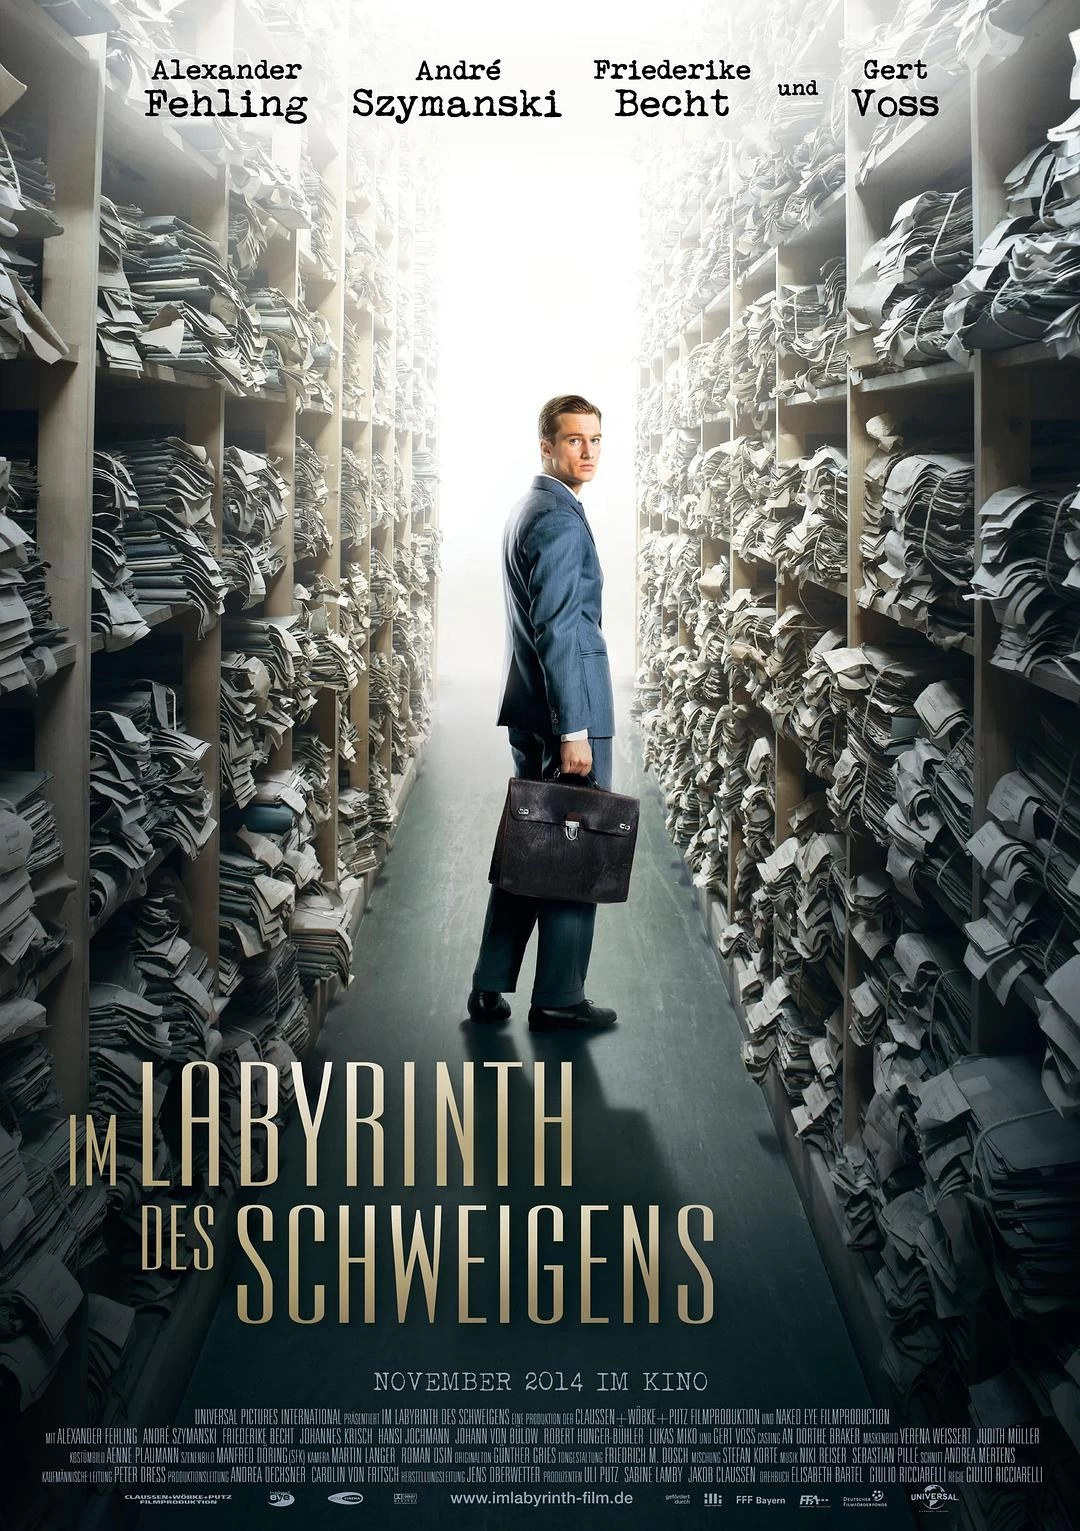 缄默的迷宫 蓝光原盘下载+高清MKV版/谎言迷宮(台) / 大话迷宫(港) / 宫 / Labyrinth of Lies 2014 Im Labyrinth des Schweigens 30.5G